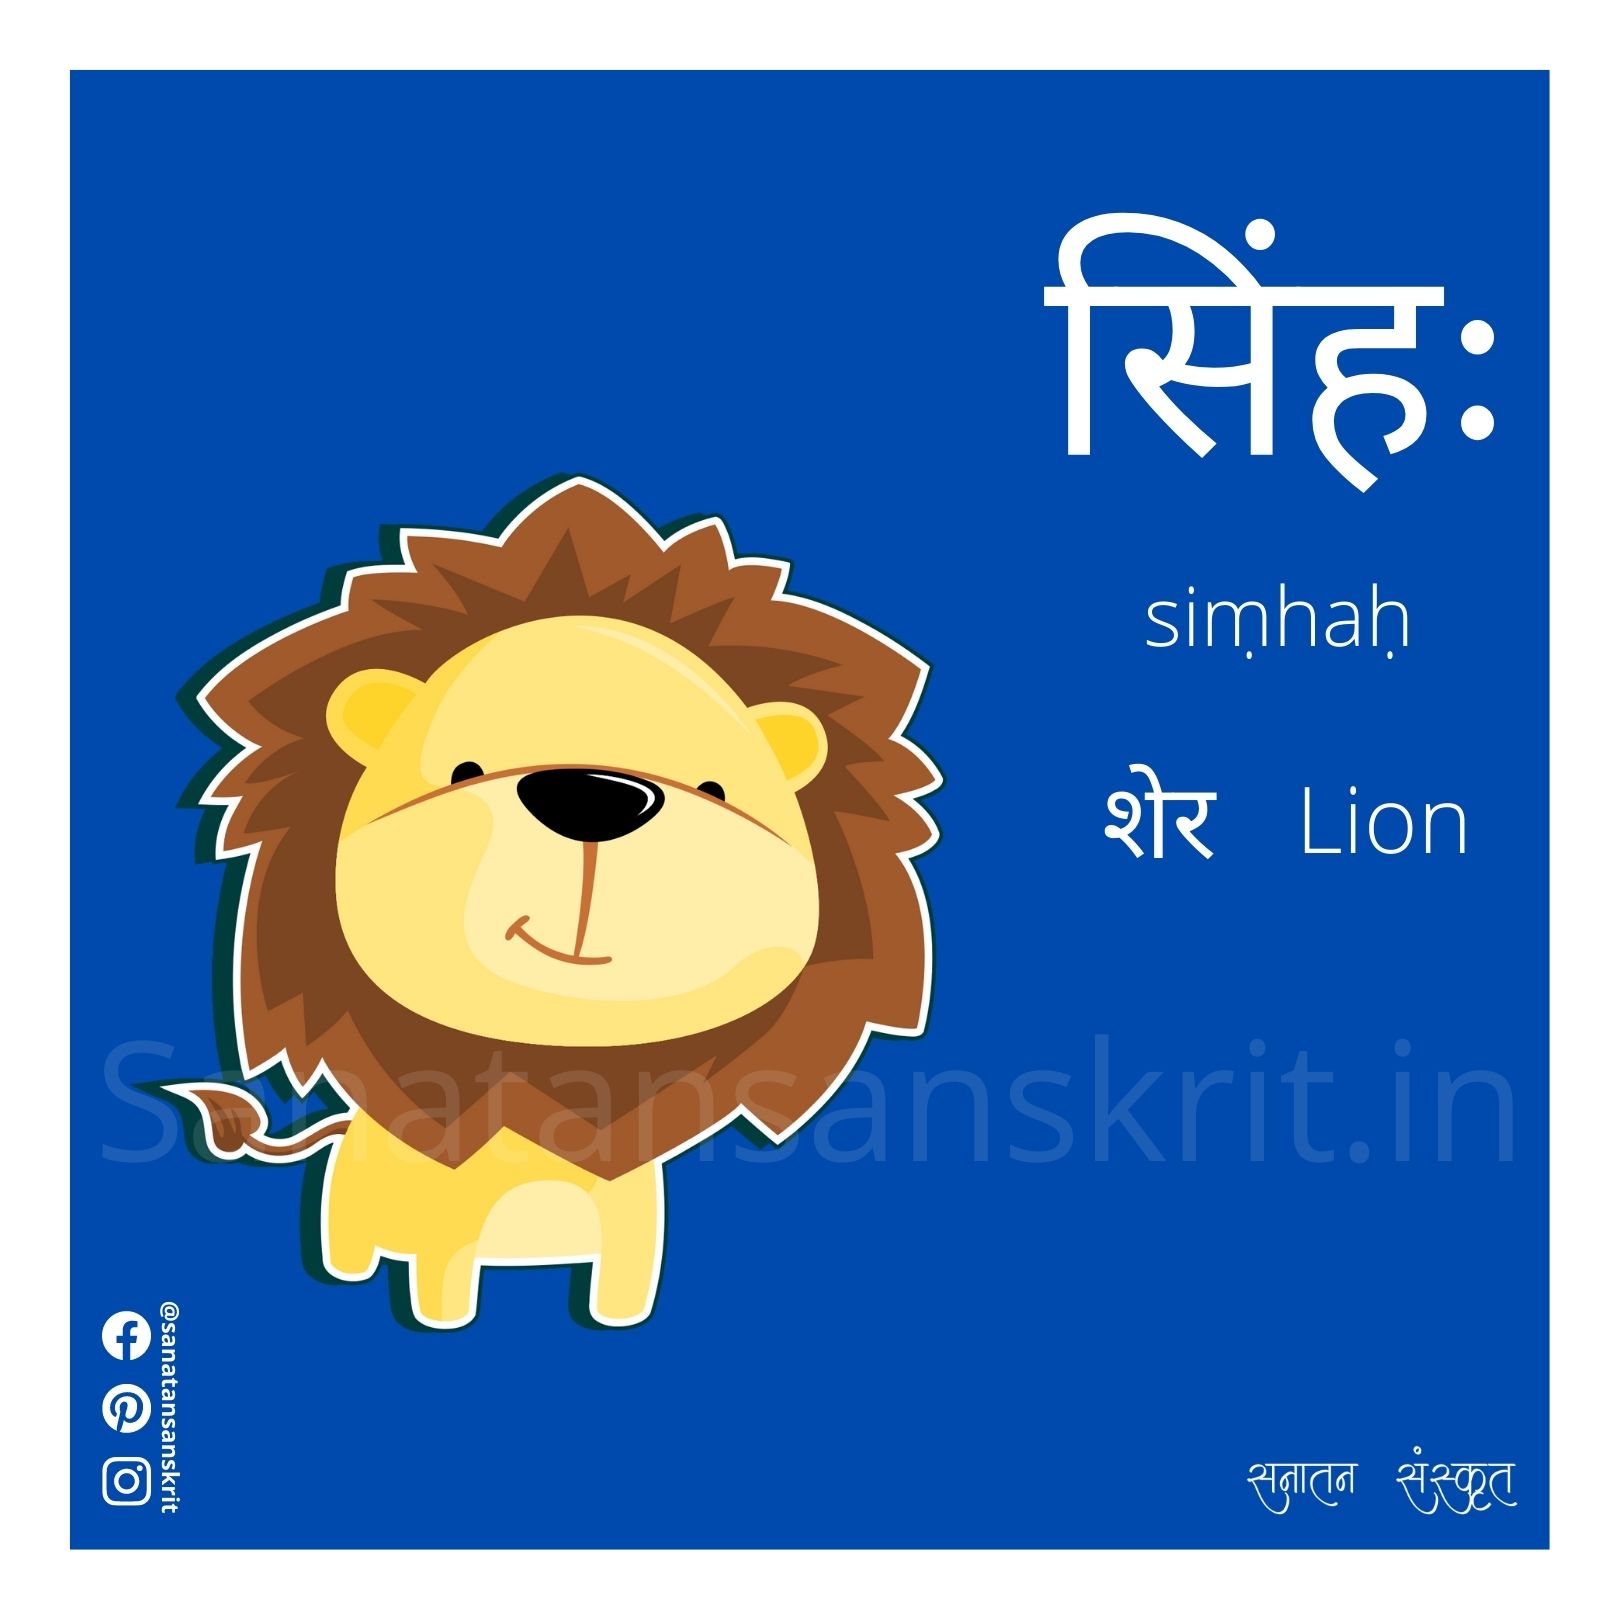 Animal Name in Sanskrit | जानवरों के नाम संस्कृत में | सनातन संस्कृत